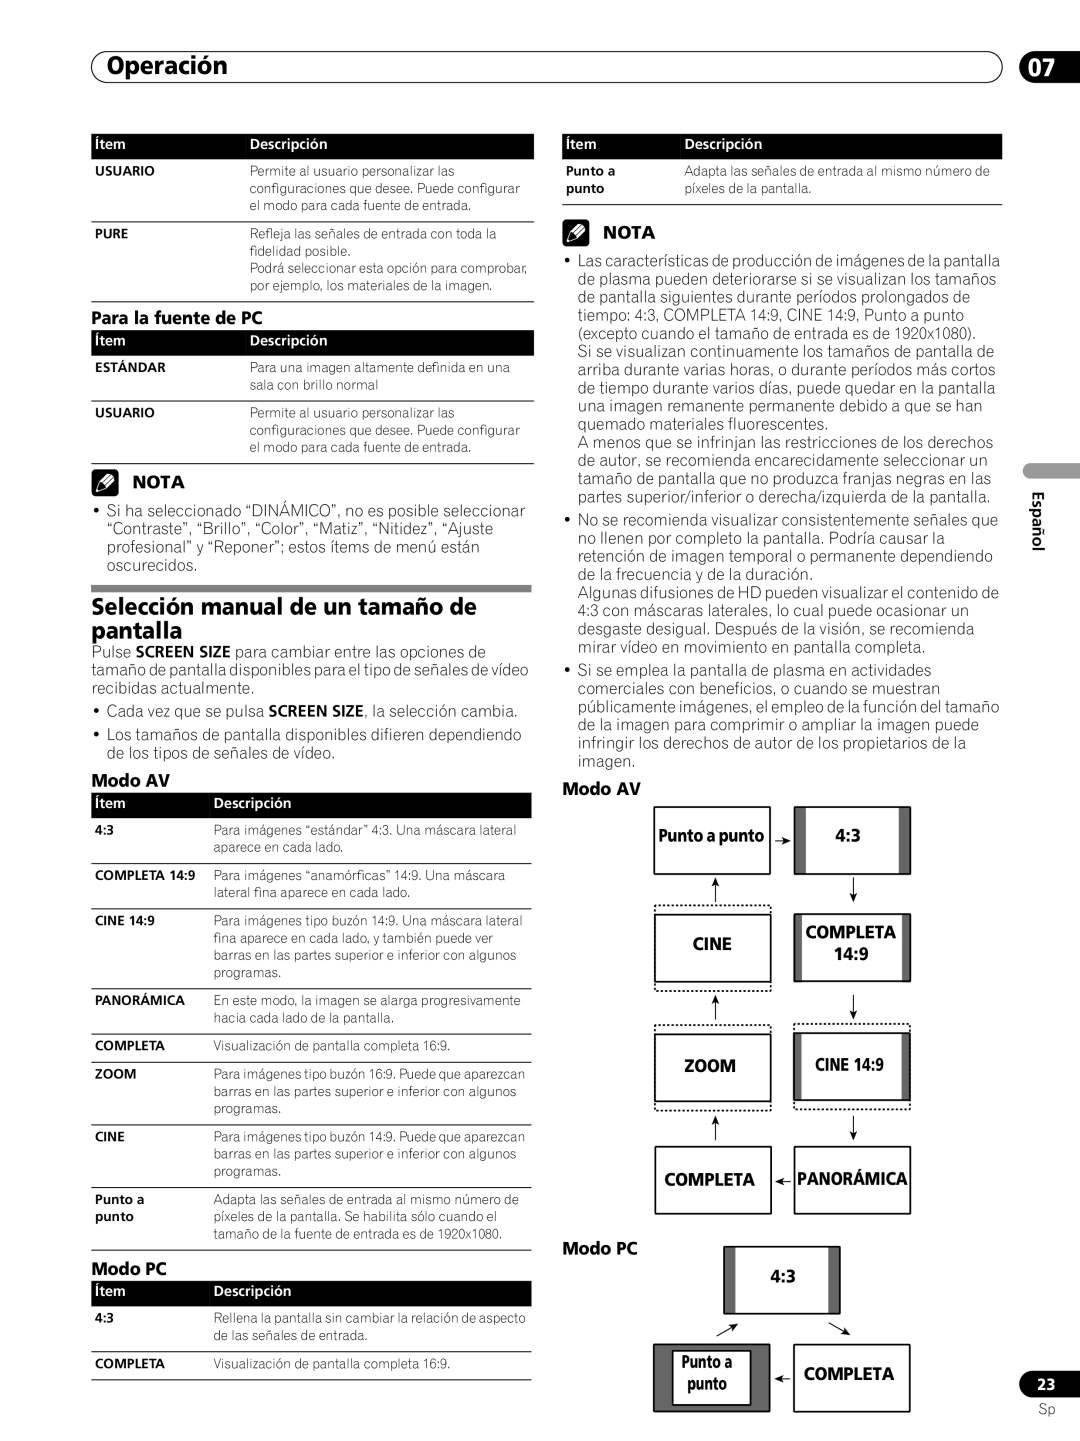 Pioneer PRO-FHD1 Selección manual de un tamaño de pantalla, Operación, Para la fuente de PC, Nota, Modo AV, Modo PC, Cine 